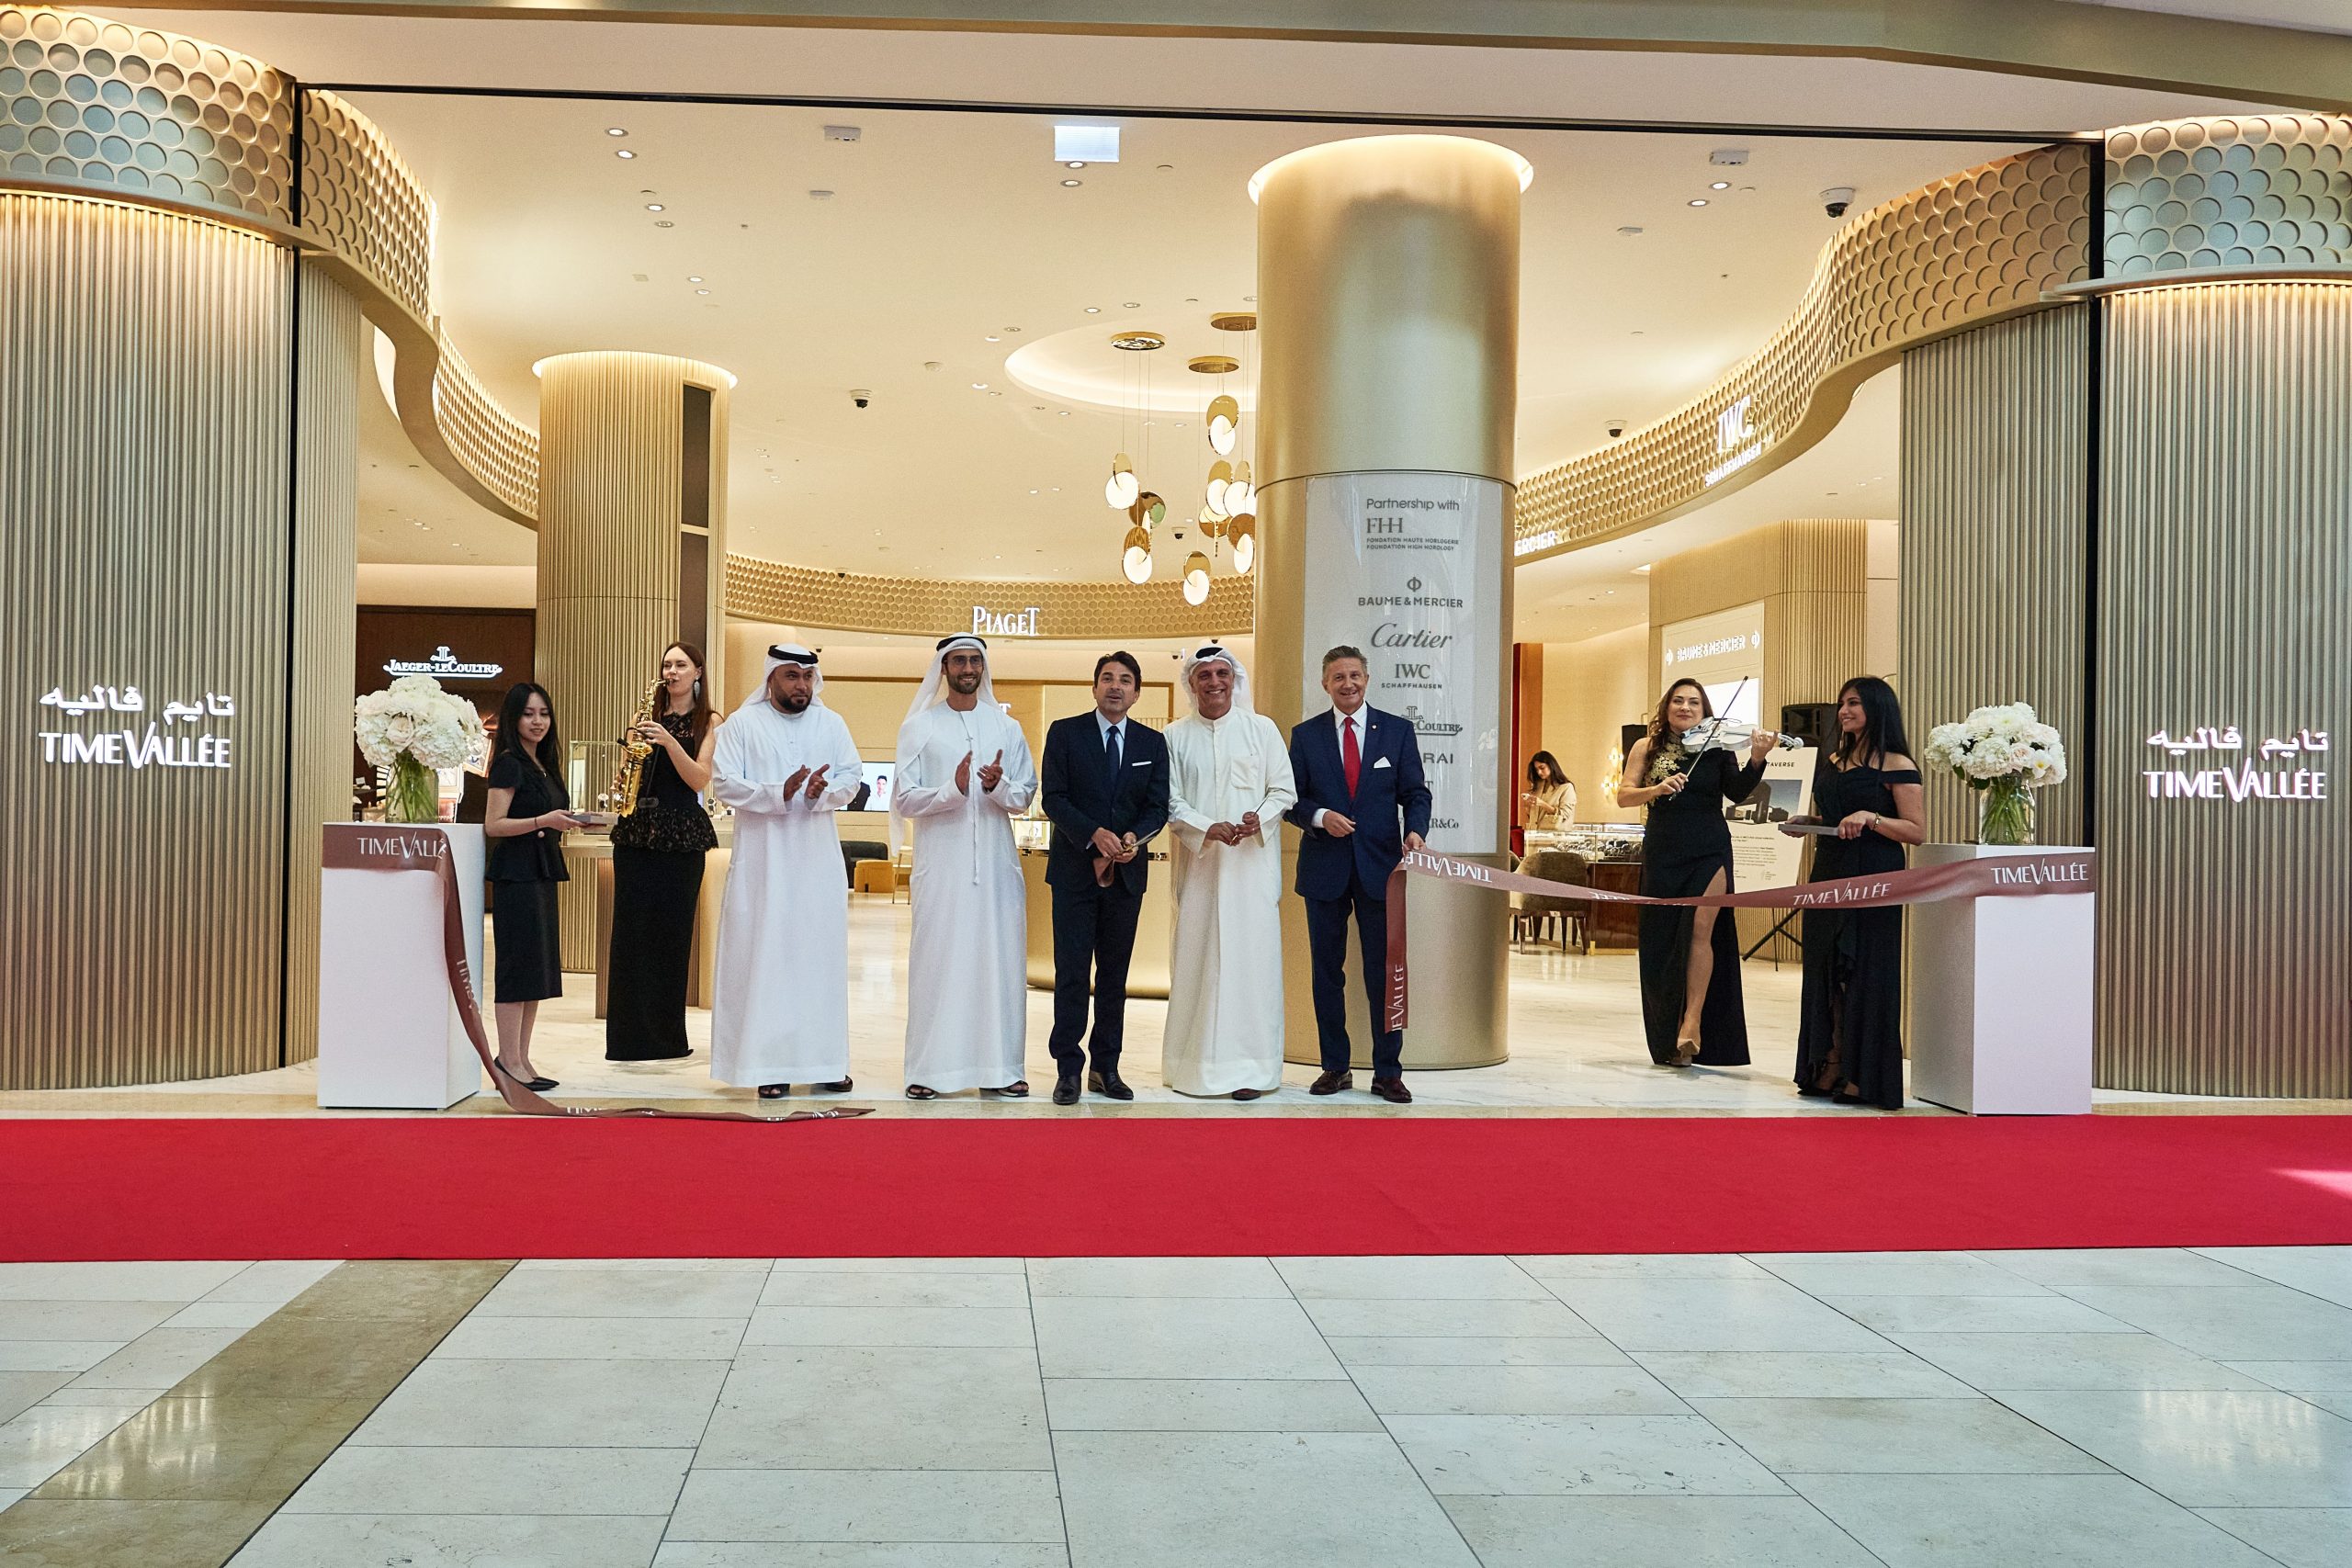 العلامة التجارية تايم فاليه تحتفل بافتتاح أول بوتيك لها في دولة الإمارات العربية المتحدة في ياس مول-أبوظبي